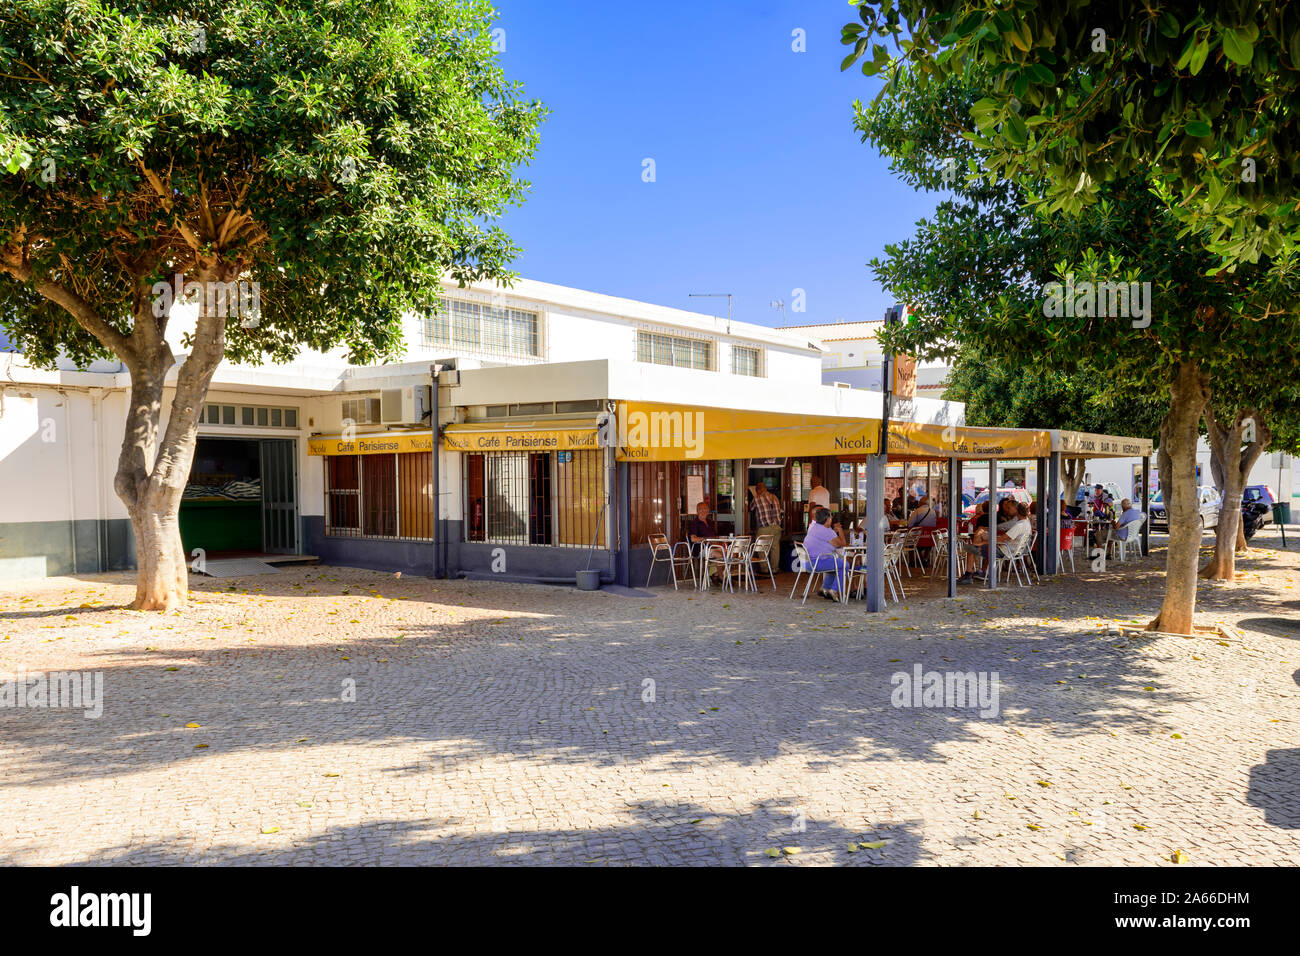 Moncarapacho Einheimische Einheimische entspannen sich im Nicola a Street Bar Café Restaurant. Moncarapacho Algarve, Portugal. Stockfoto